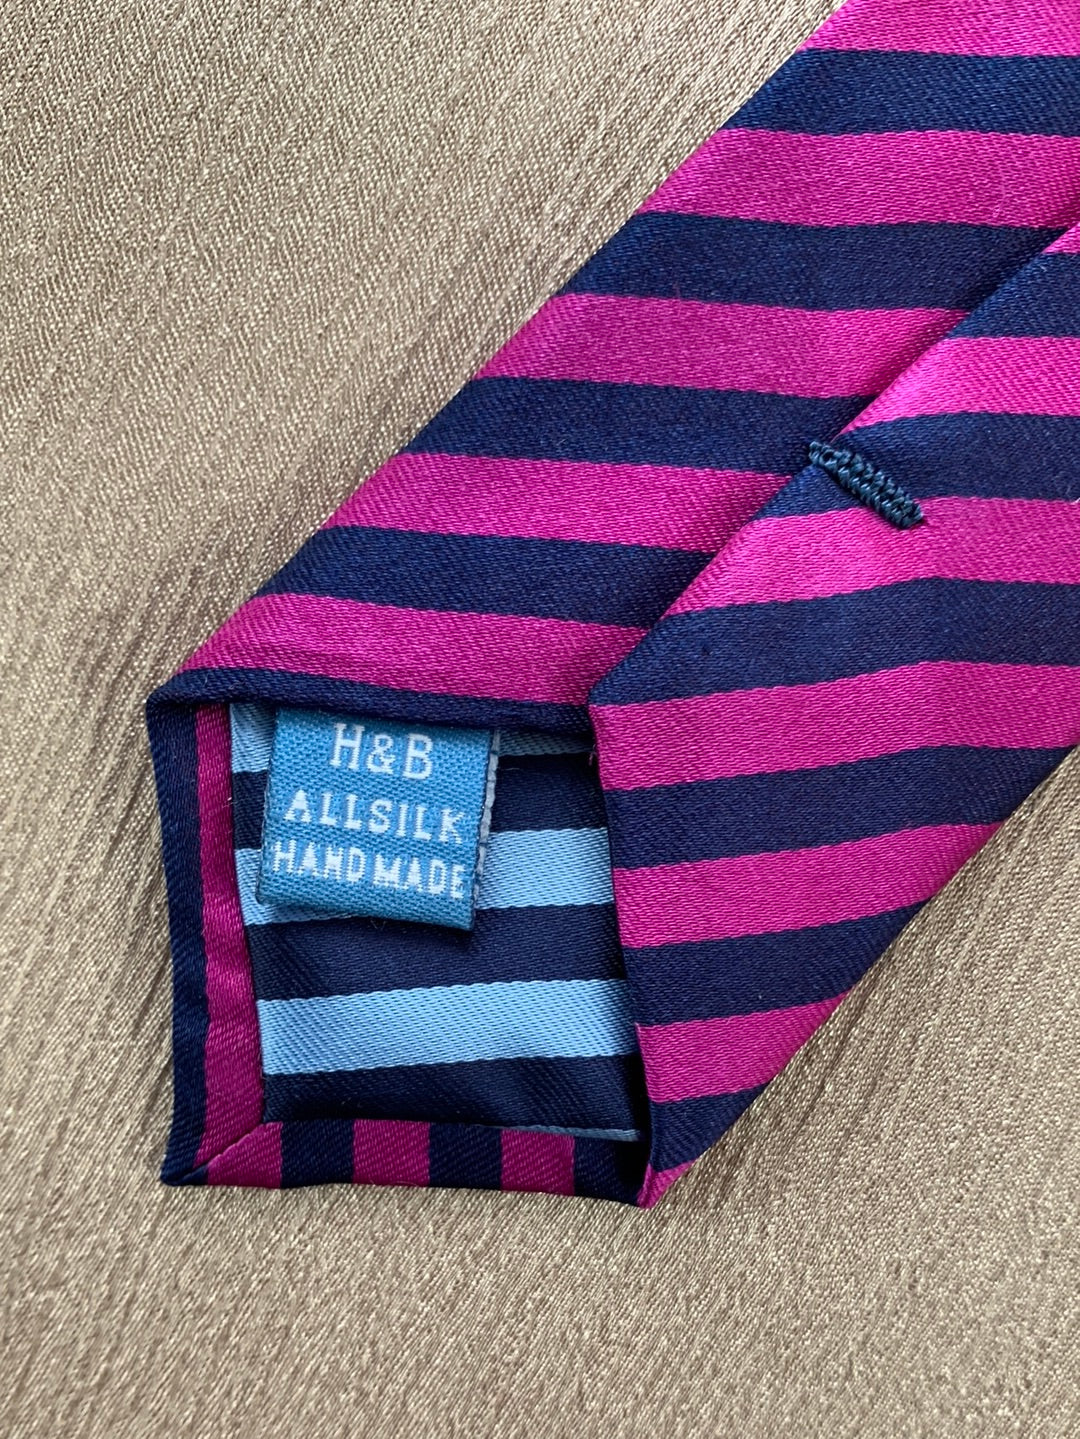 NWT - HAINES & BONNER fuchsia & navy Stripe All Silk Hand Made Necktie